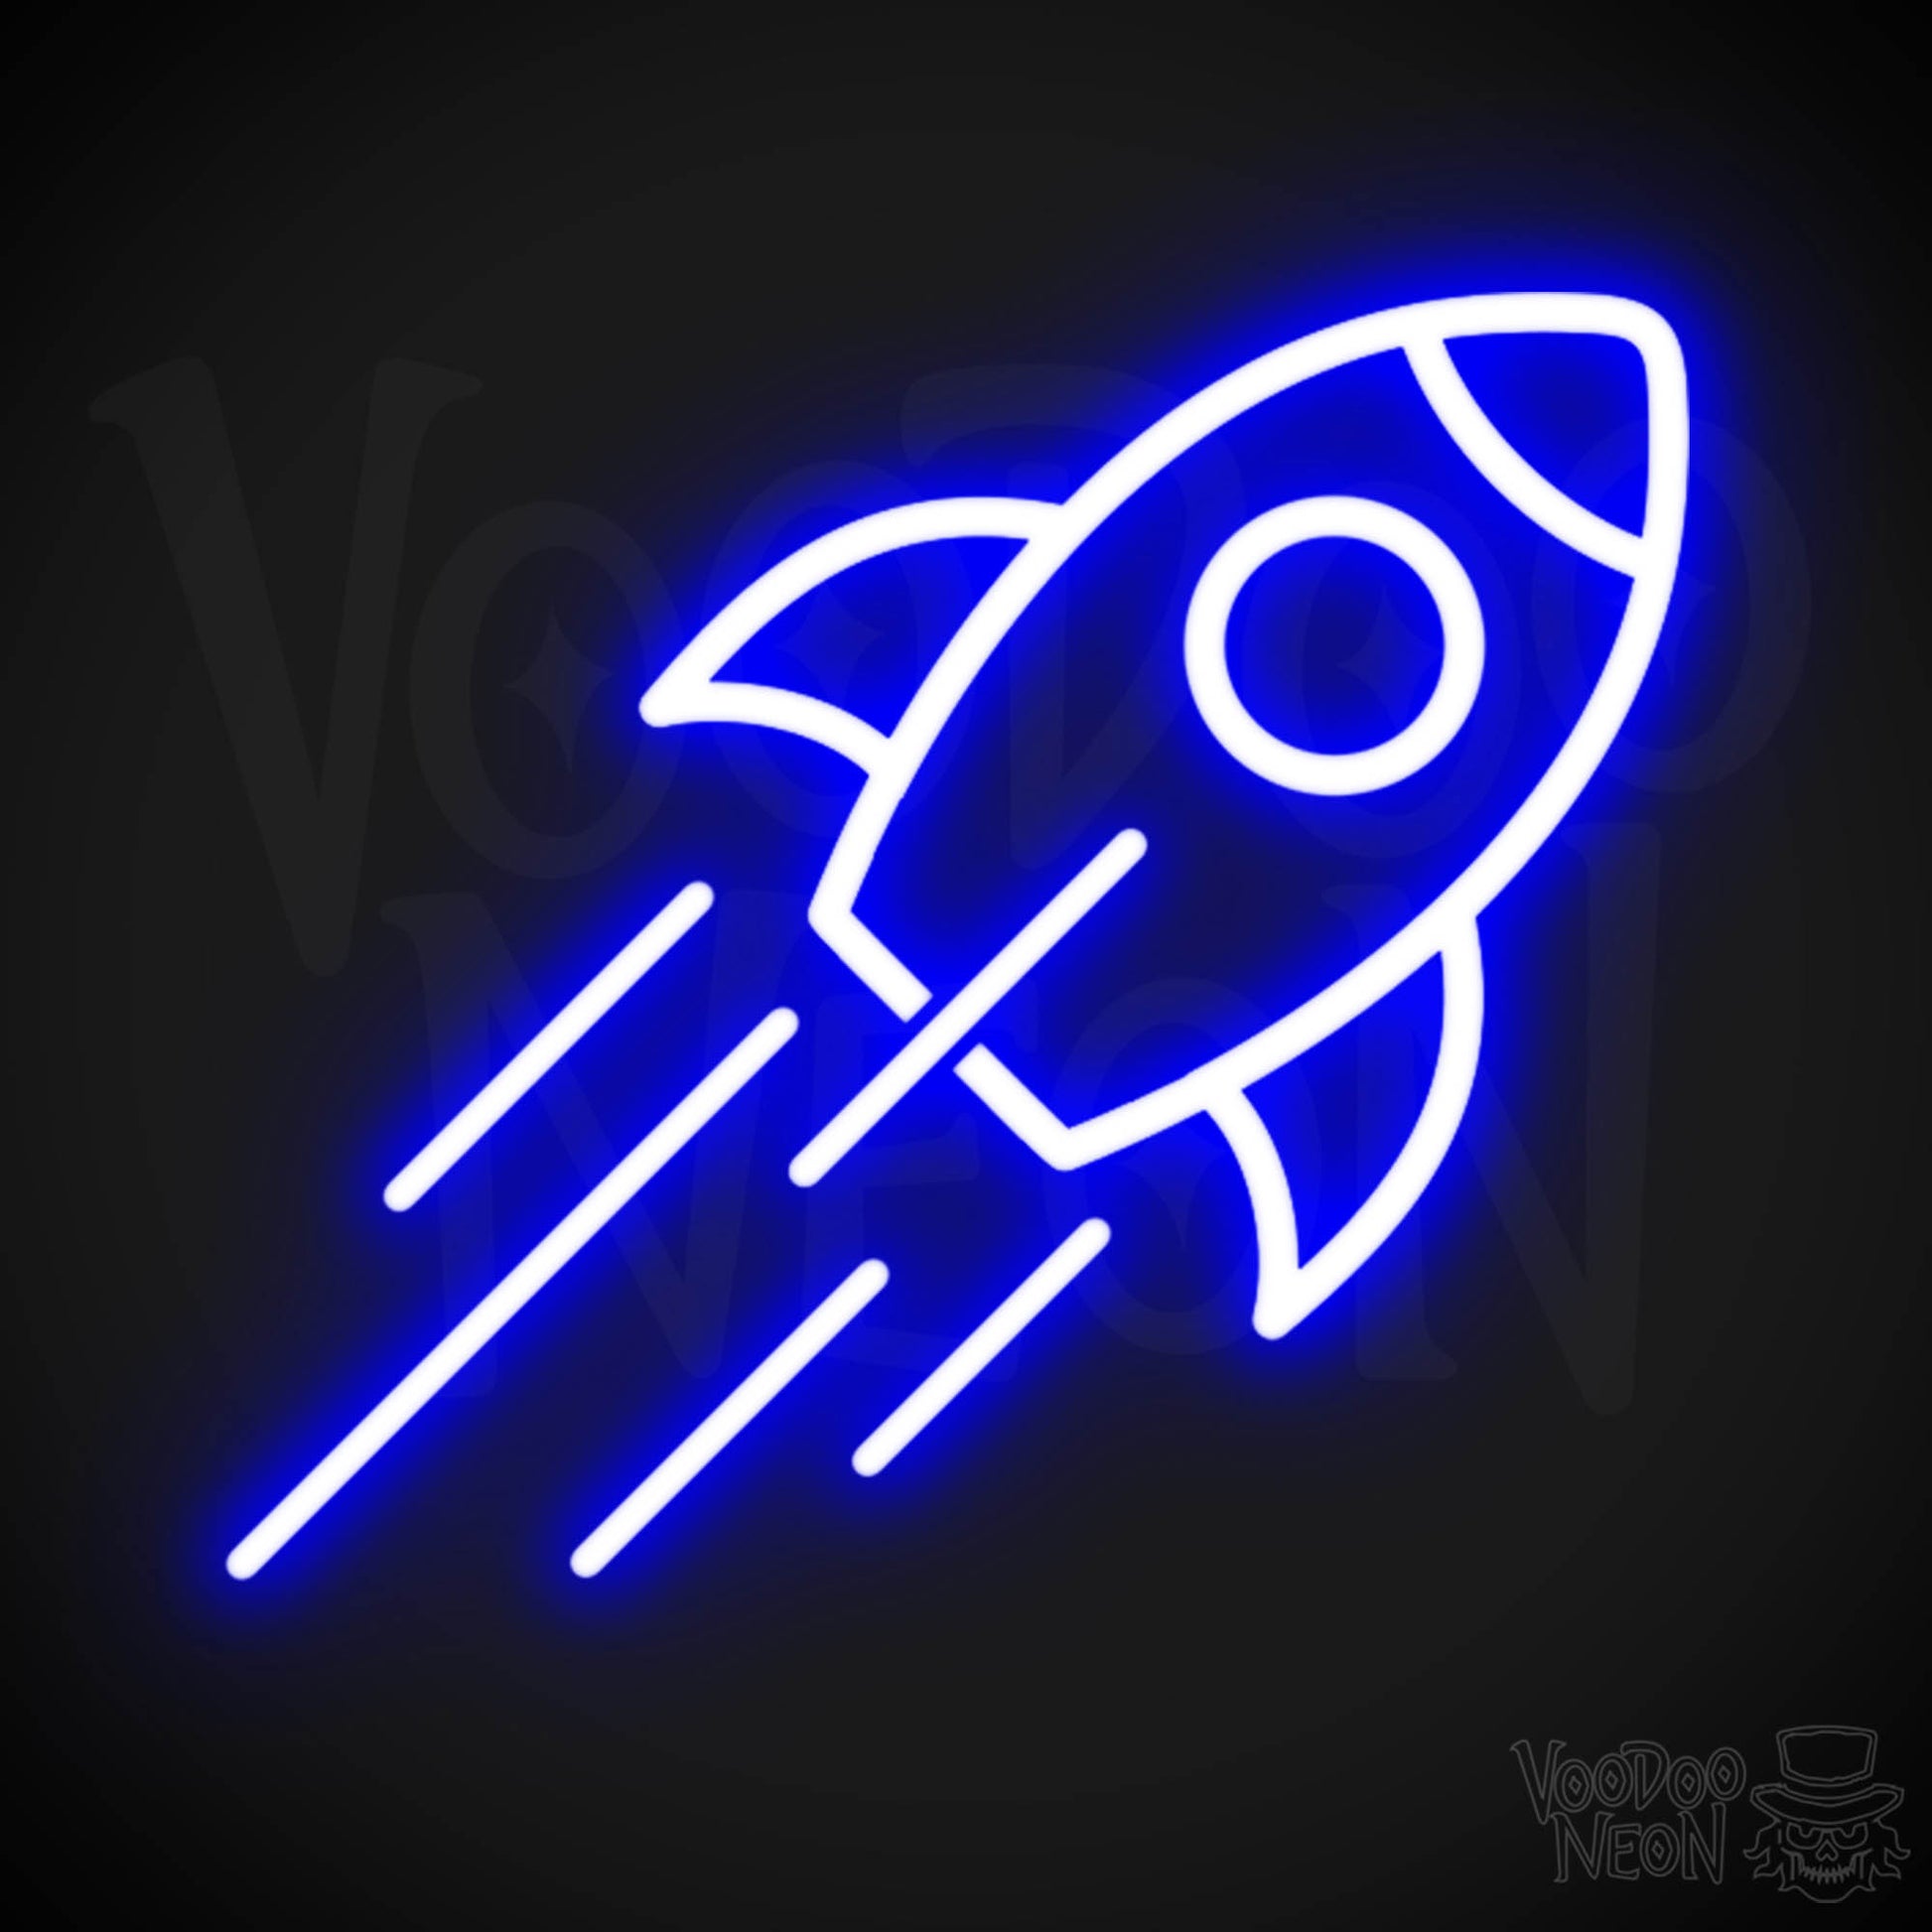 Neon Rocket - Rocket Neon Sign - Rocket Ship Neon Wall Art - Color Dark Blue